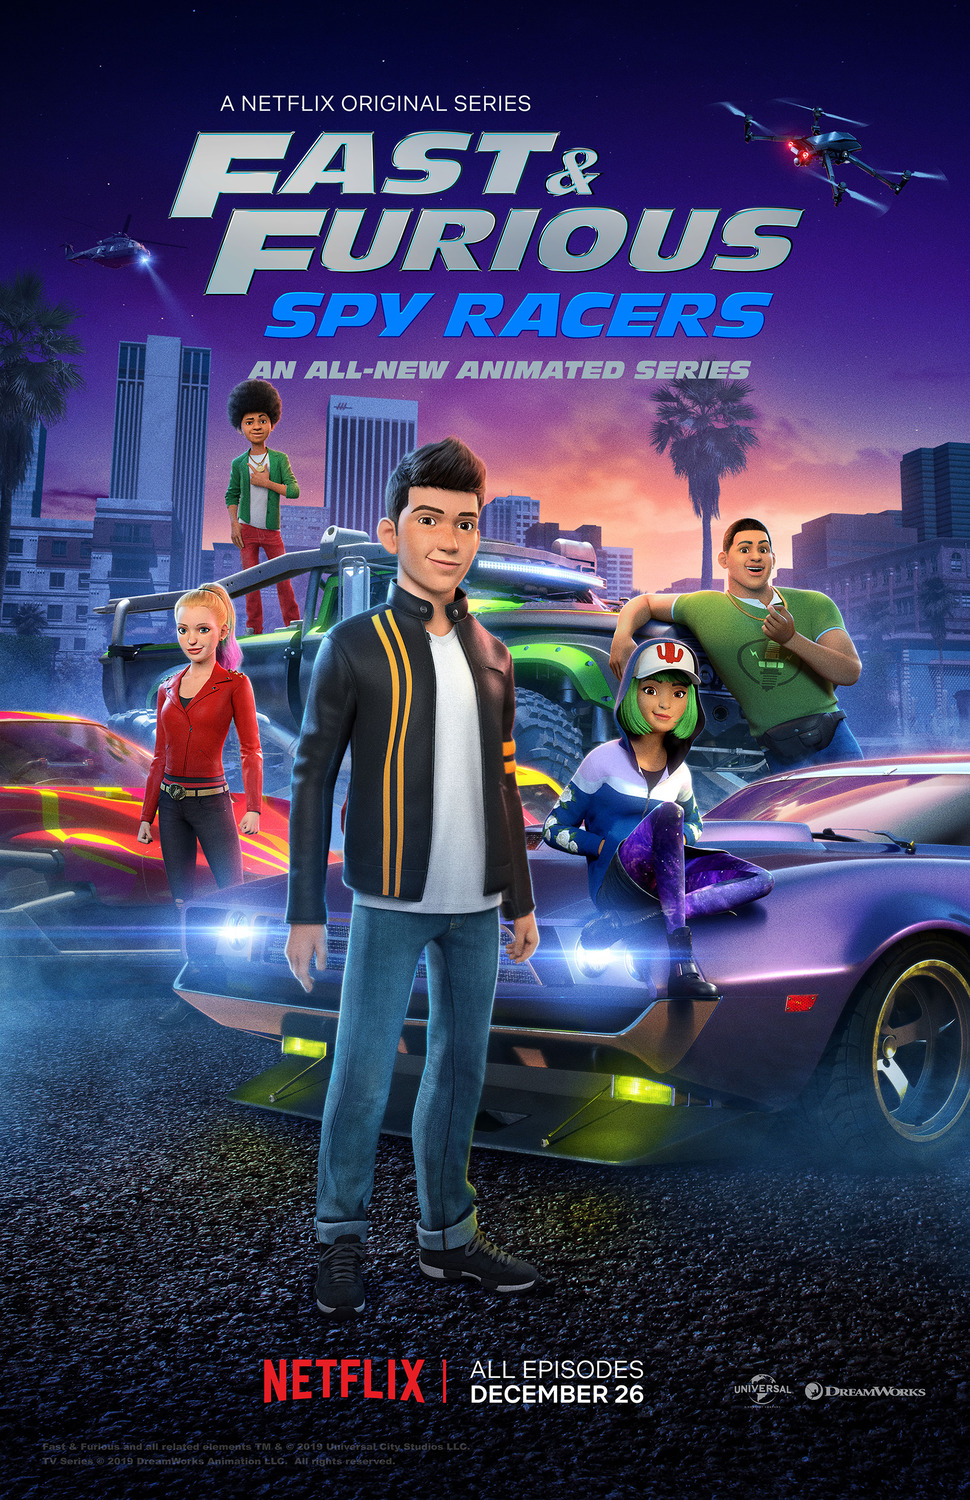 ดูหนังออนไลน์ฟรี Fast & Furious Spy Racers Season 6 EP.8 เร็วแรงทะลุนรก ซิ่งสยบโลก ซีซั่น 6 ตอนที่ 8